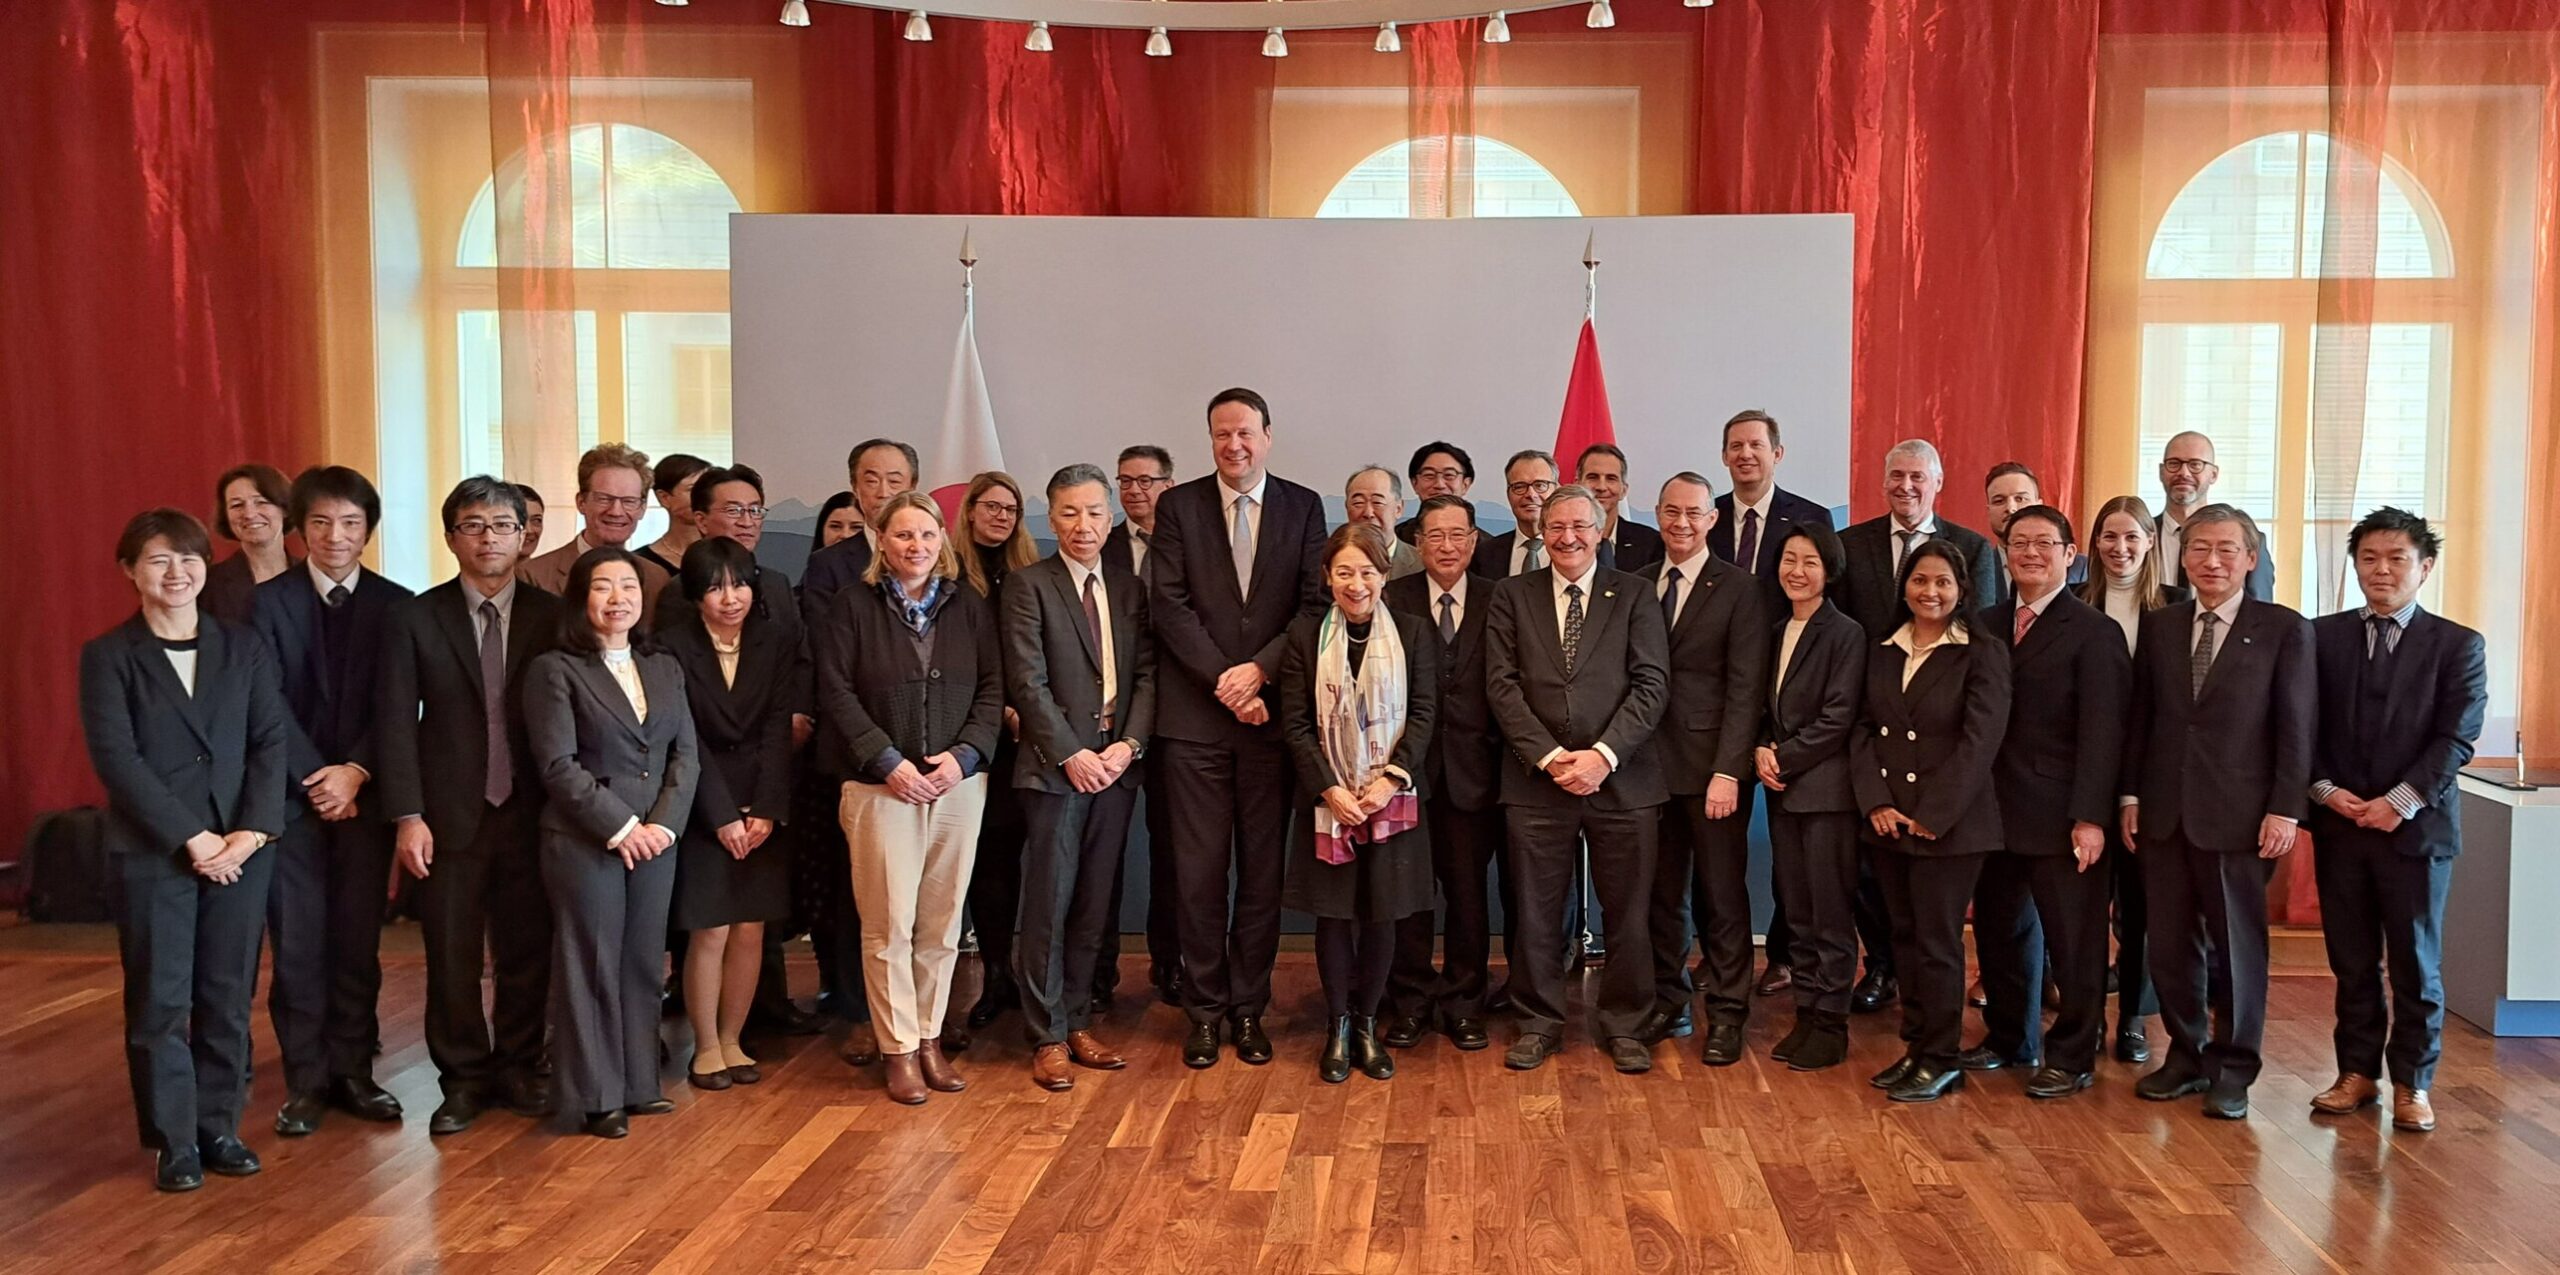 Comitato Svizzera-Giappone: lanciato il quinto Comitato Misto Svizzera-Giappone per la Scienza, la Tecnologia e l’Innovazione, con focus sulla ricerca polare e l’esposizione universale OSAKA 2025